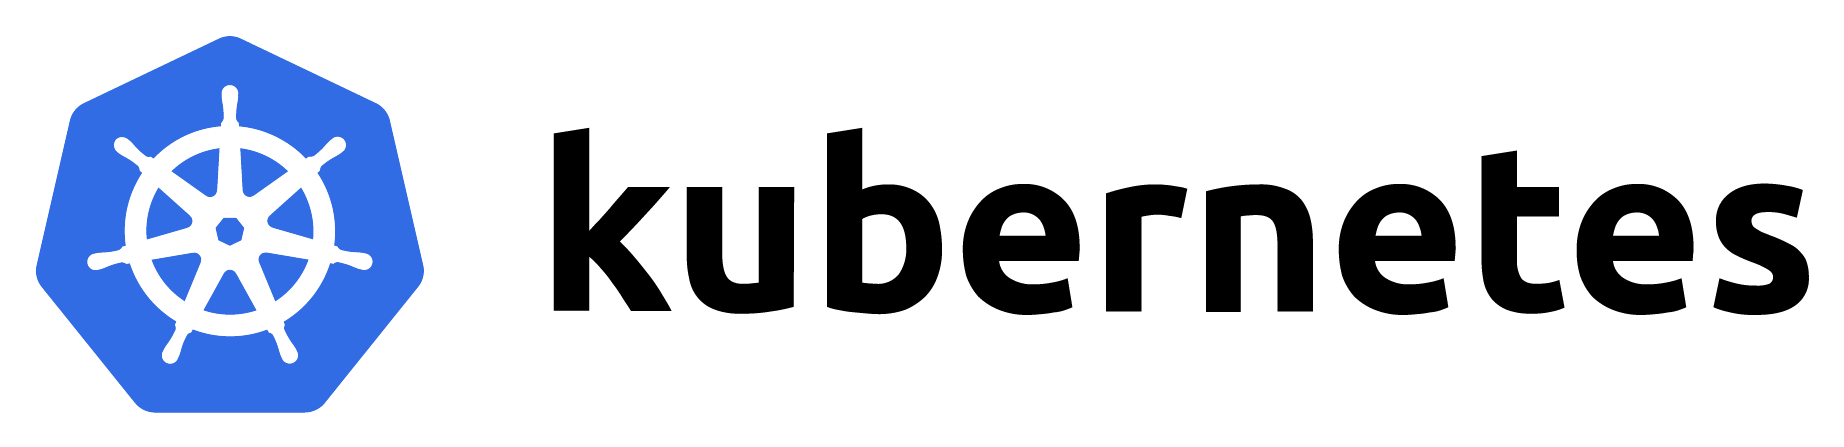 kubernetes logo